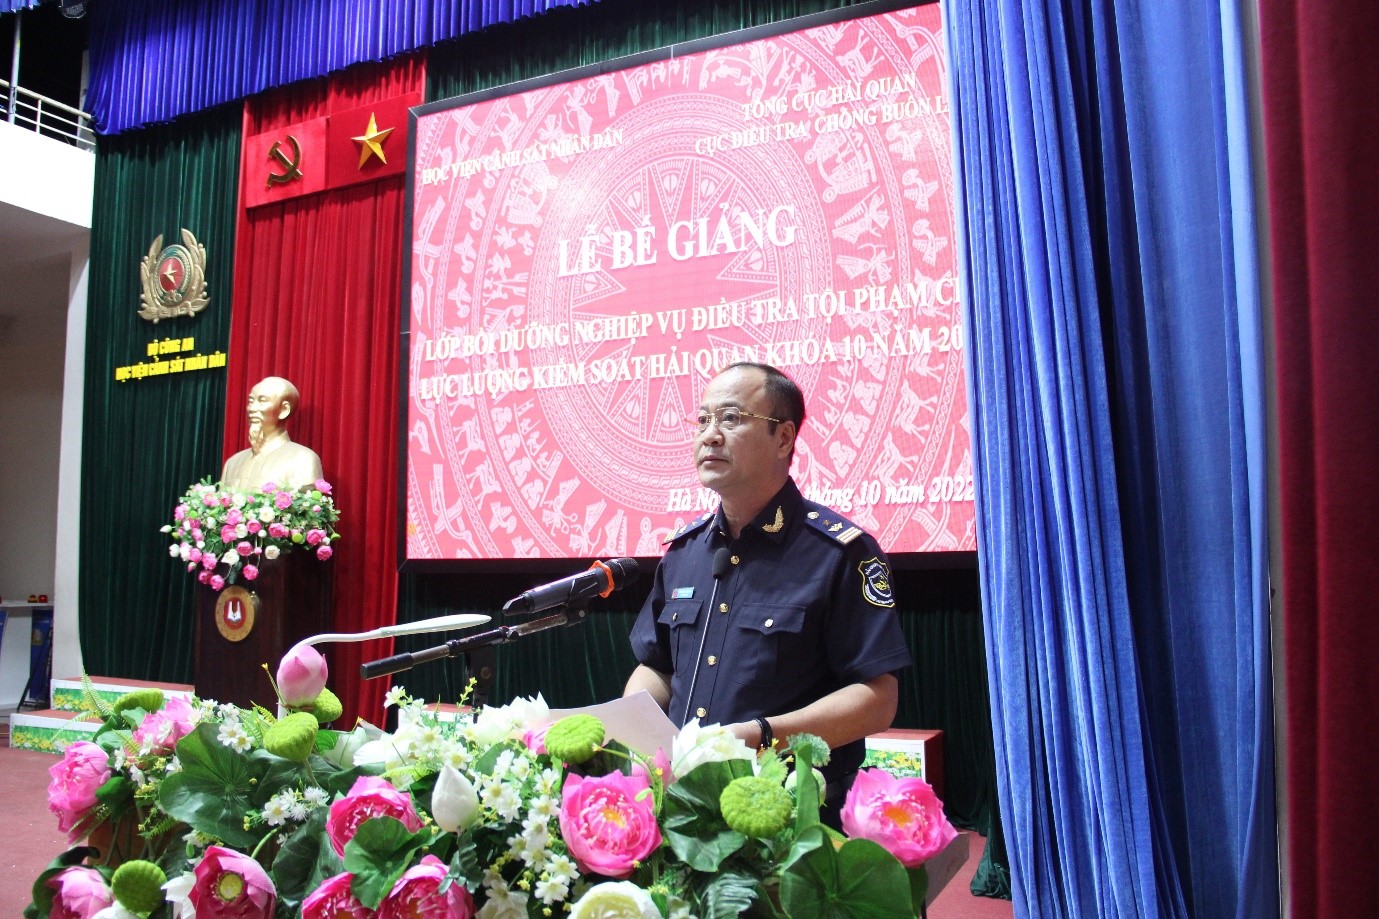 Đồng chí Nguyễn Văn Hoàn, Phó Cục trưởng Cục Điều tra chống buôn lậu phát biểu tại buổi lễ